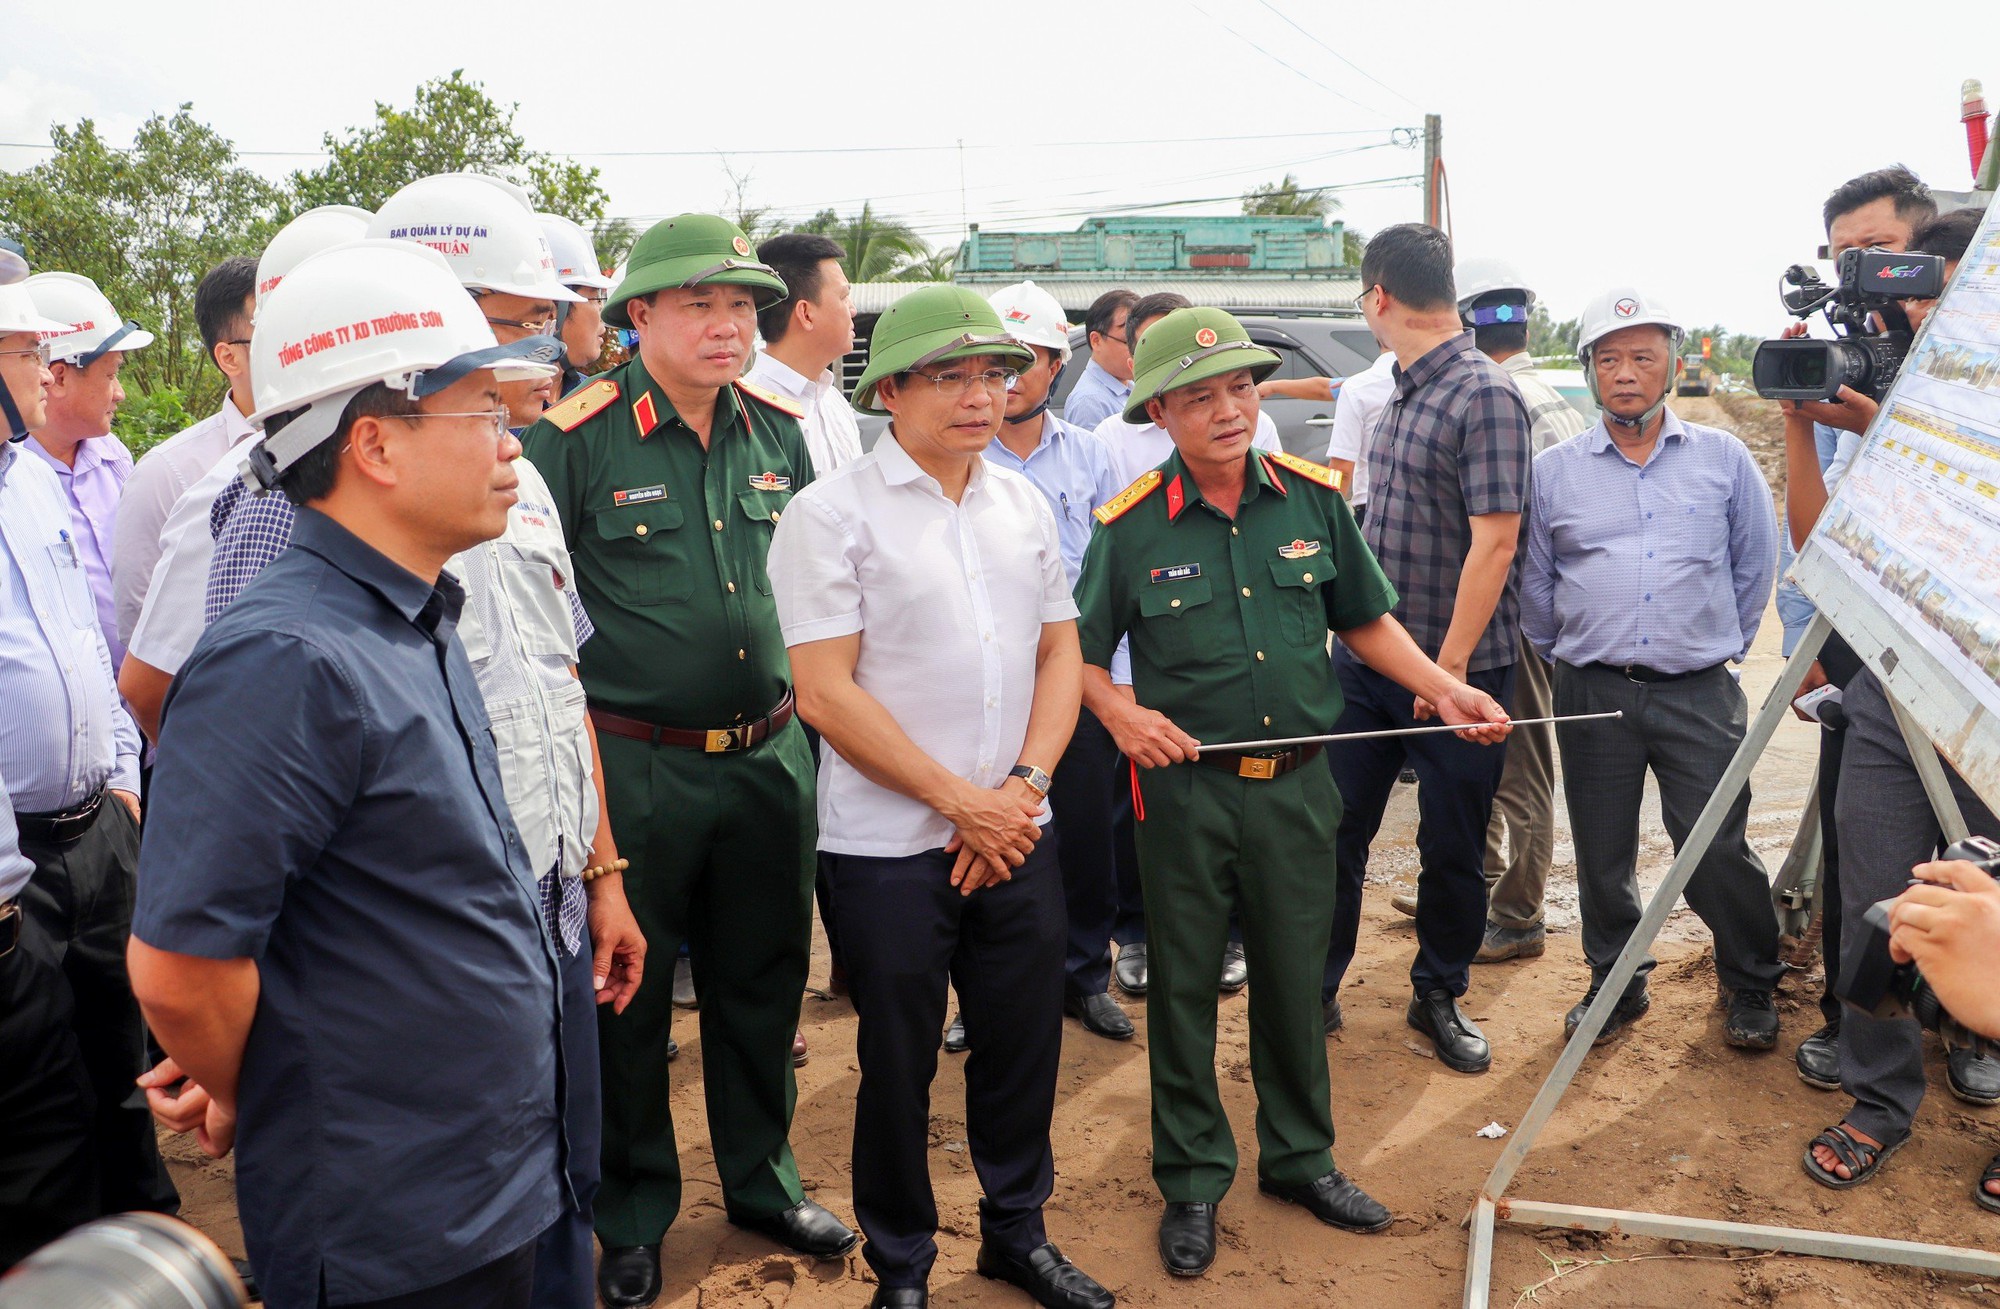 Bộ trưởng Nguyễn Văn Thắng: Ưu tiên làm đường công vụ để thi công cầu trên dự án cao tốc - Ảnh 1.